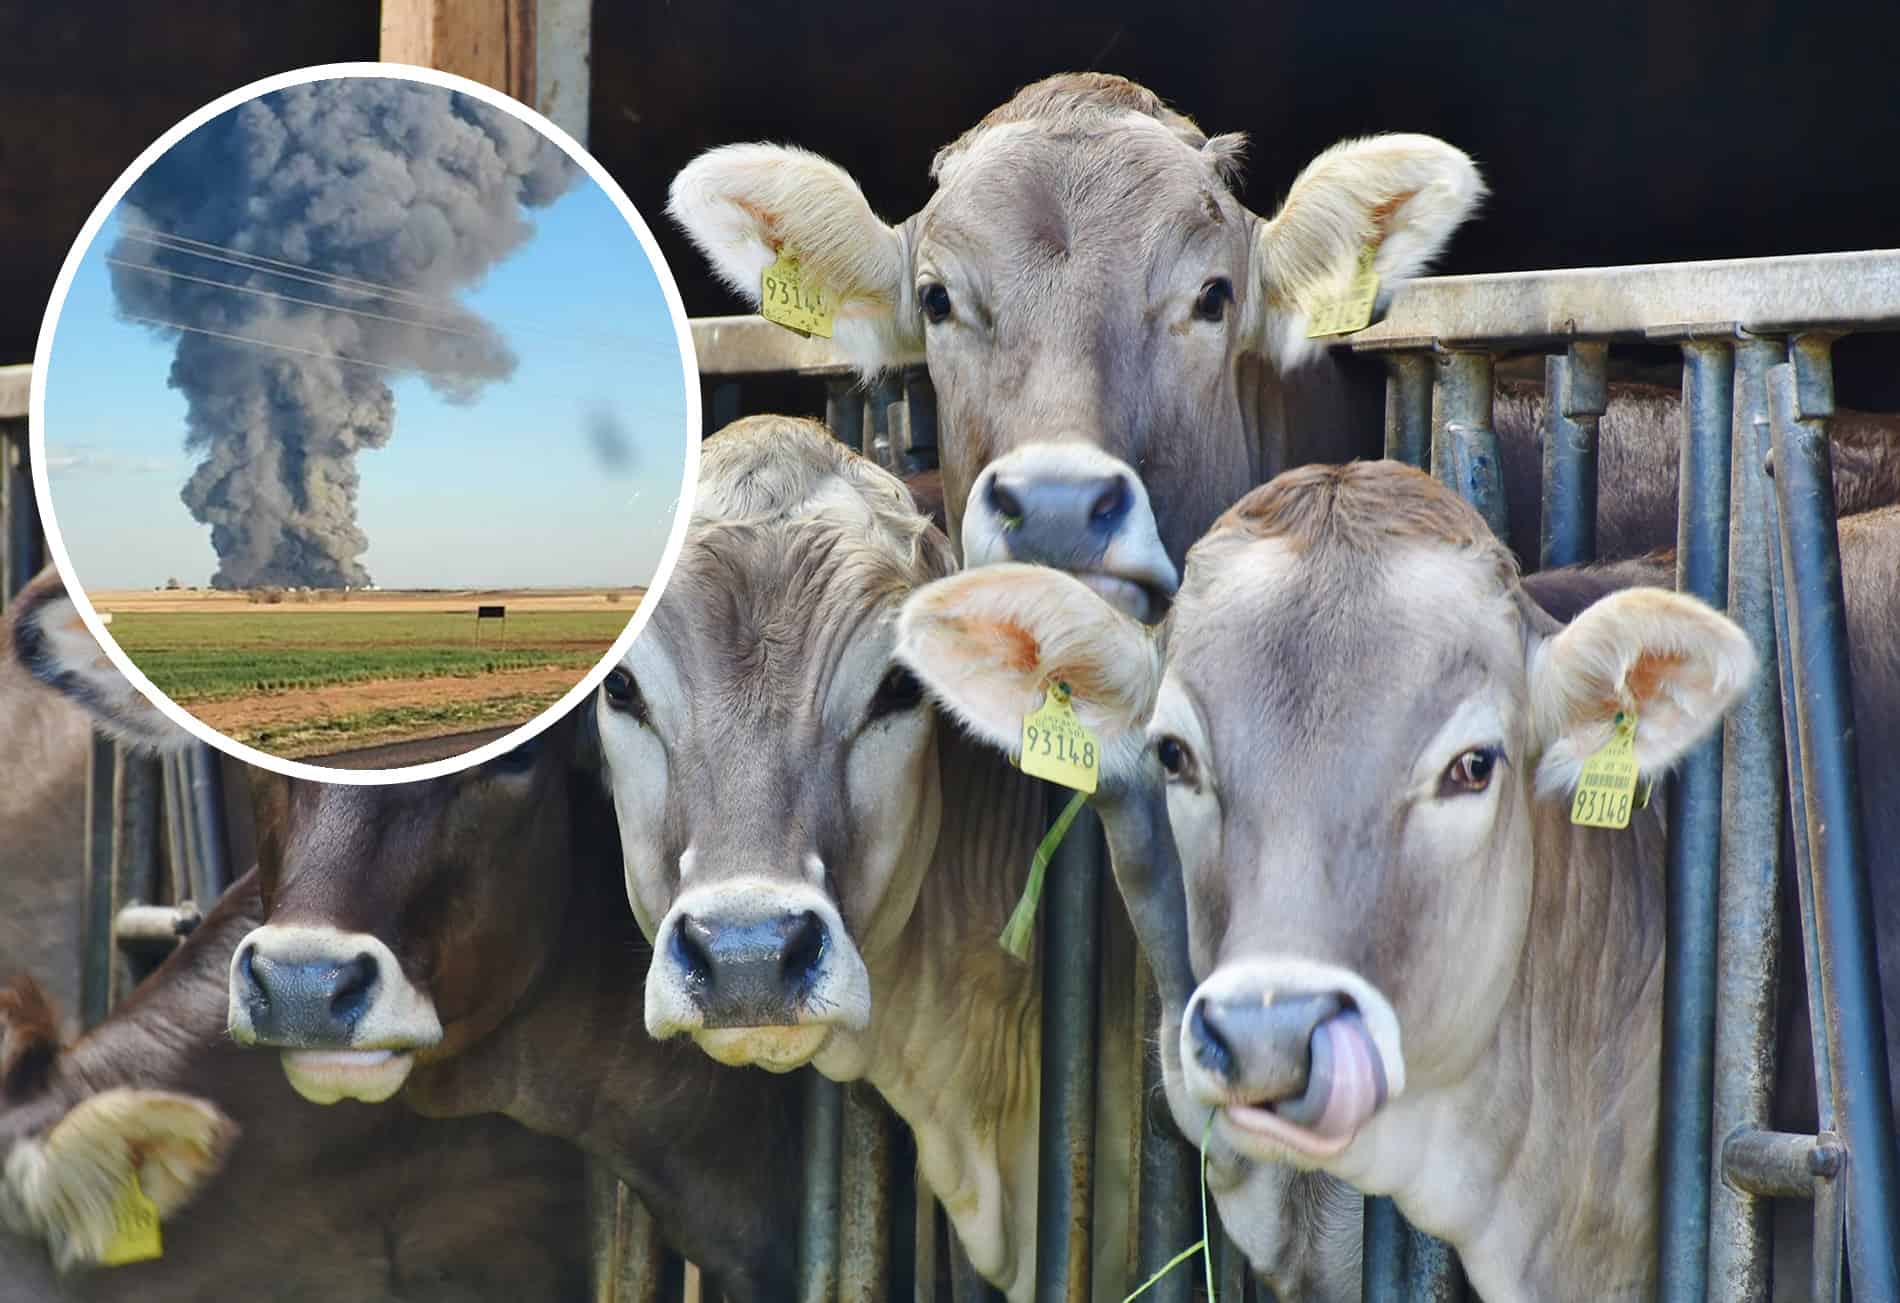 More than 18,000 cows perish in Texas farm fire